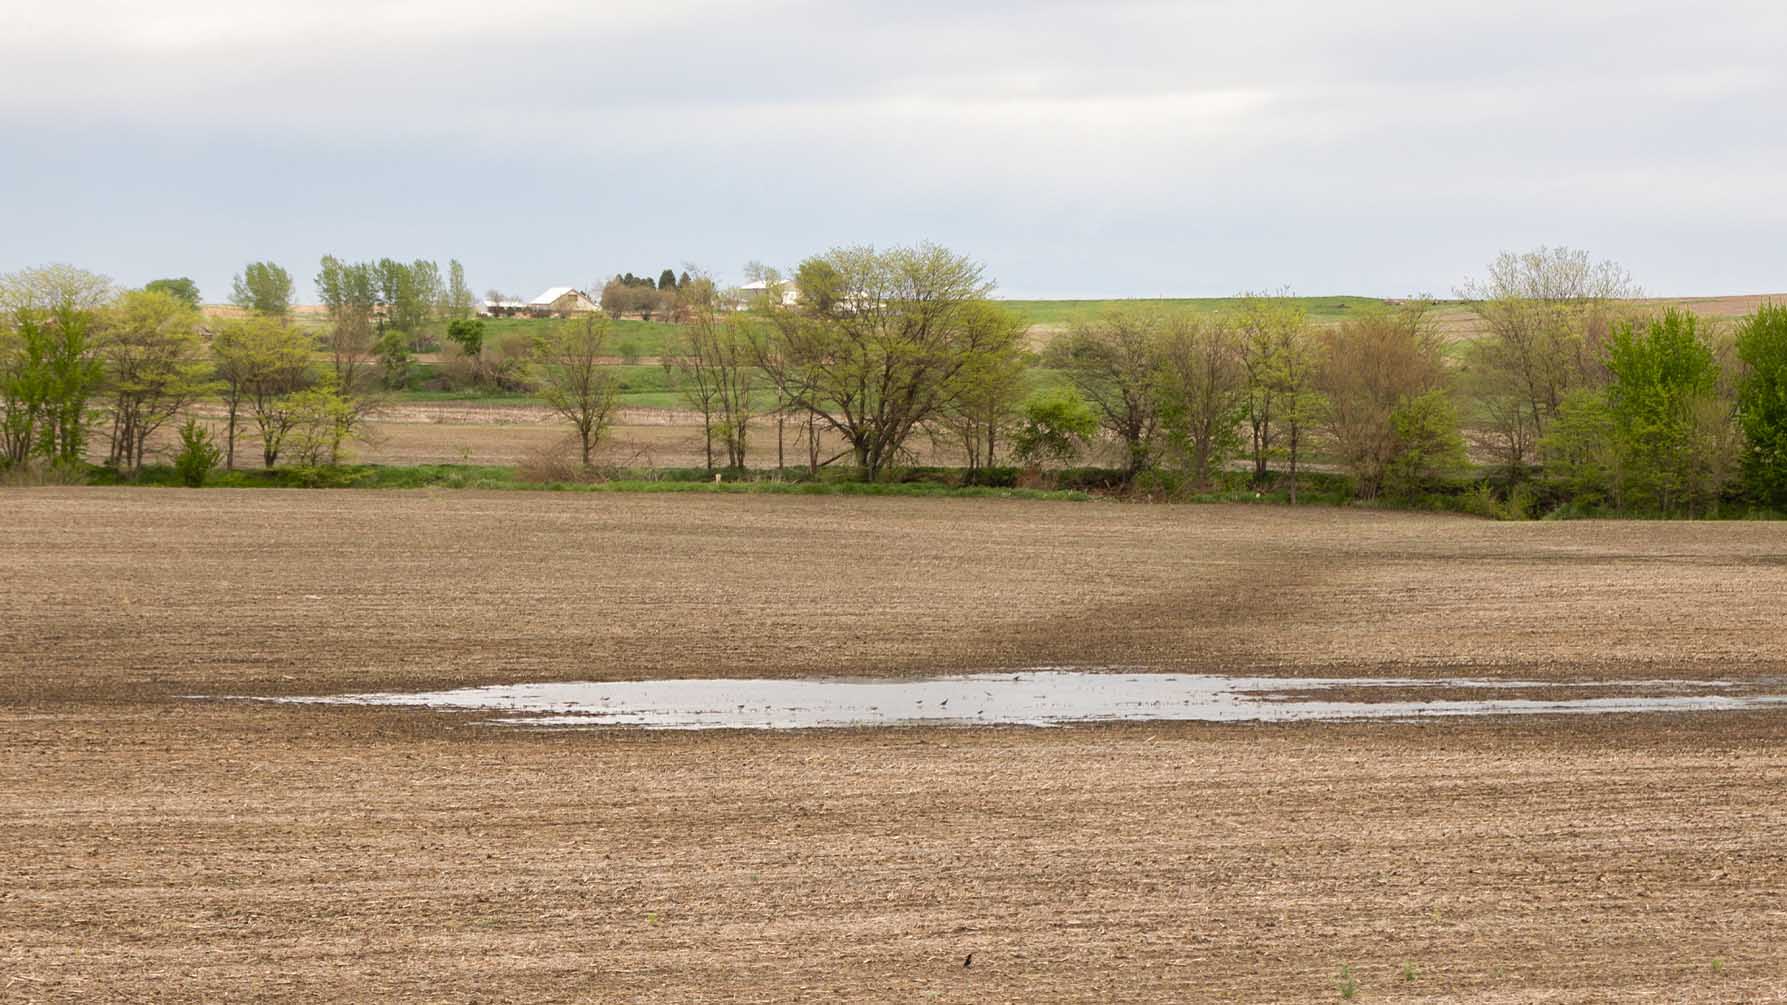 Wet spot in field after rain in Iowa